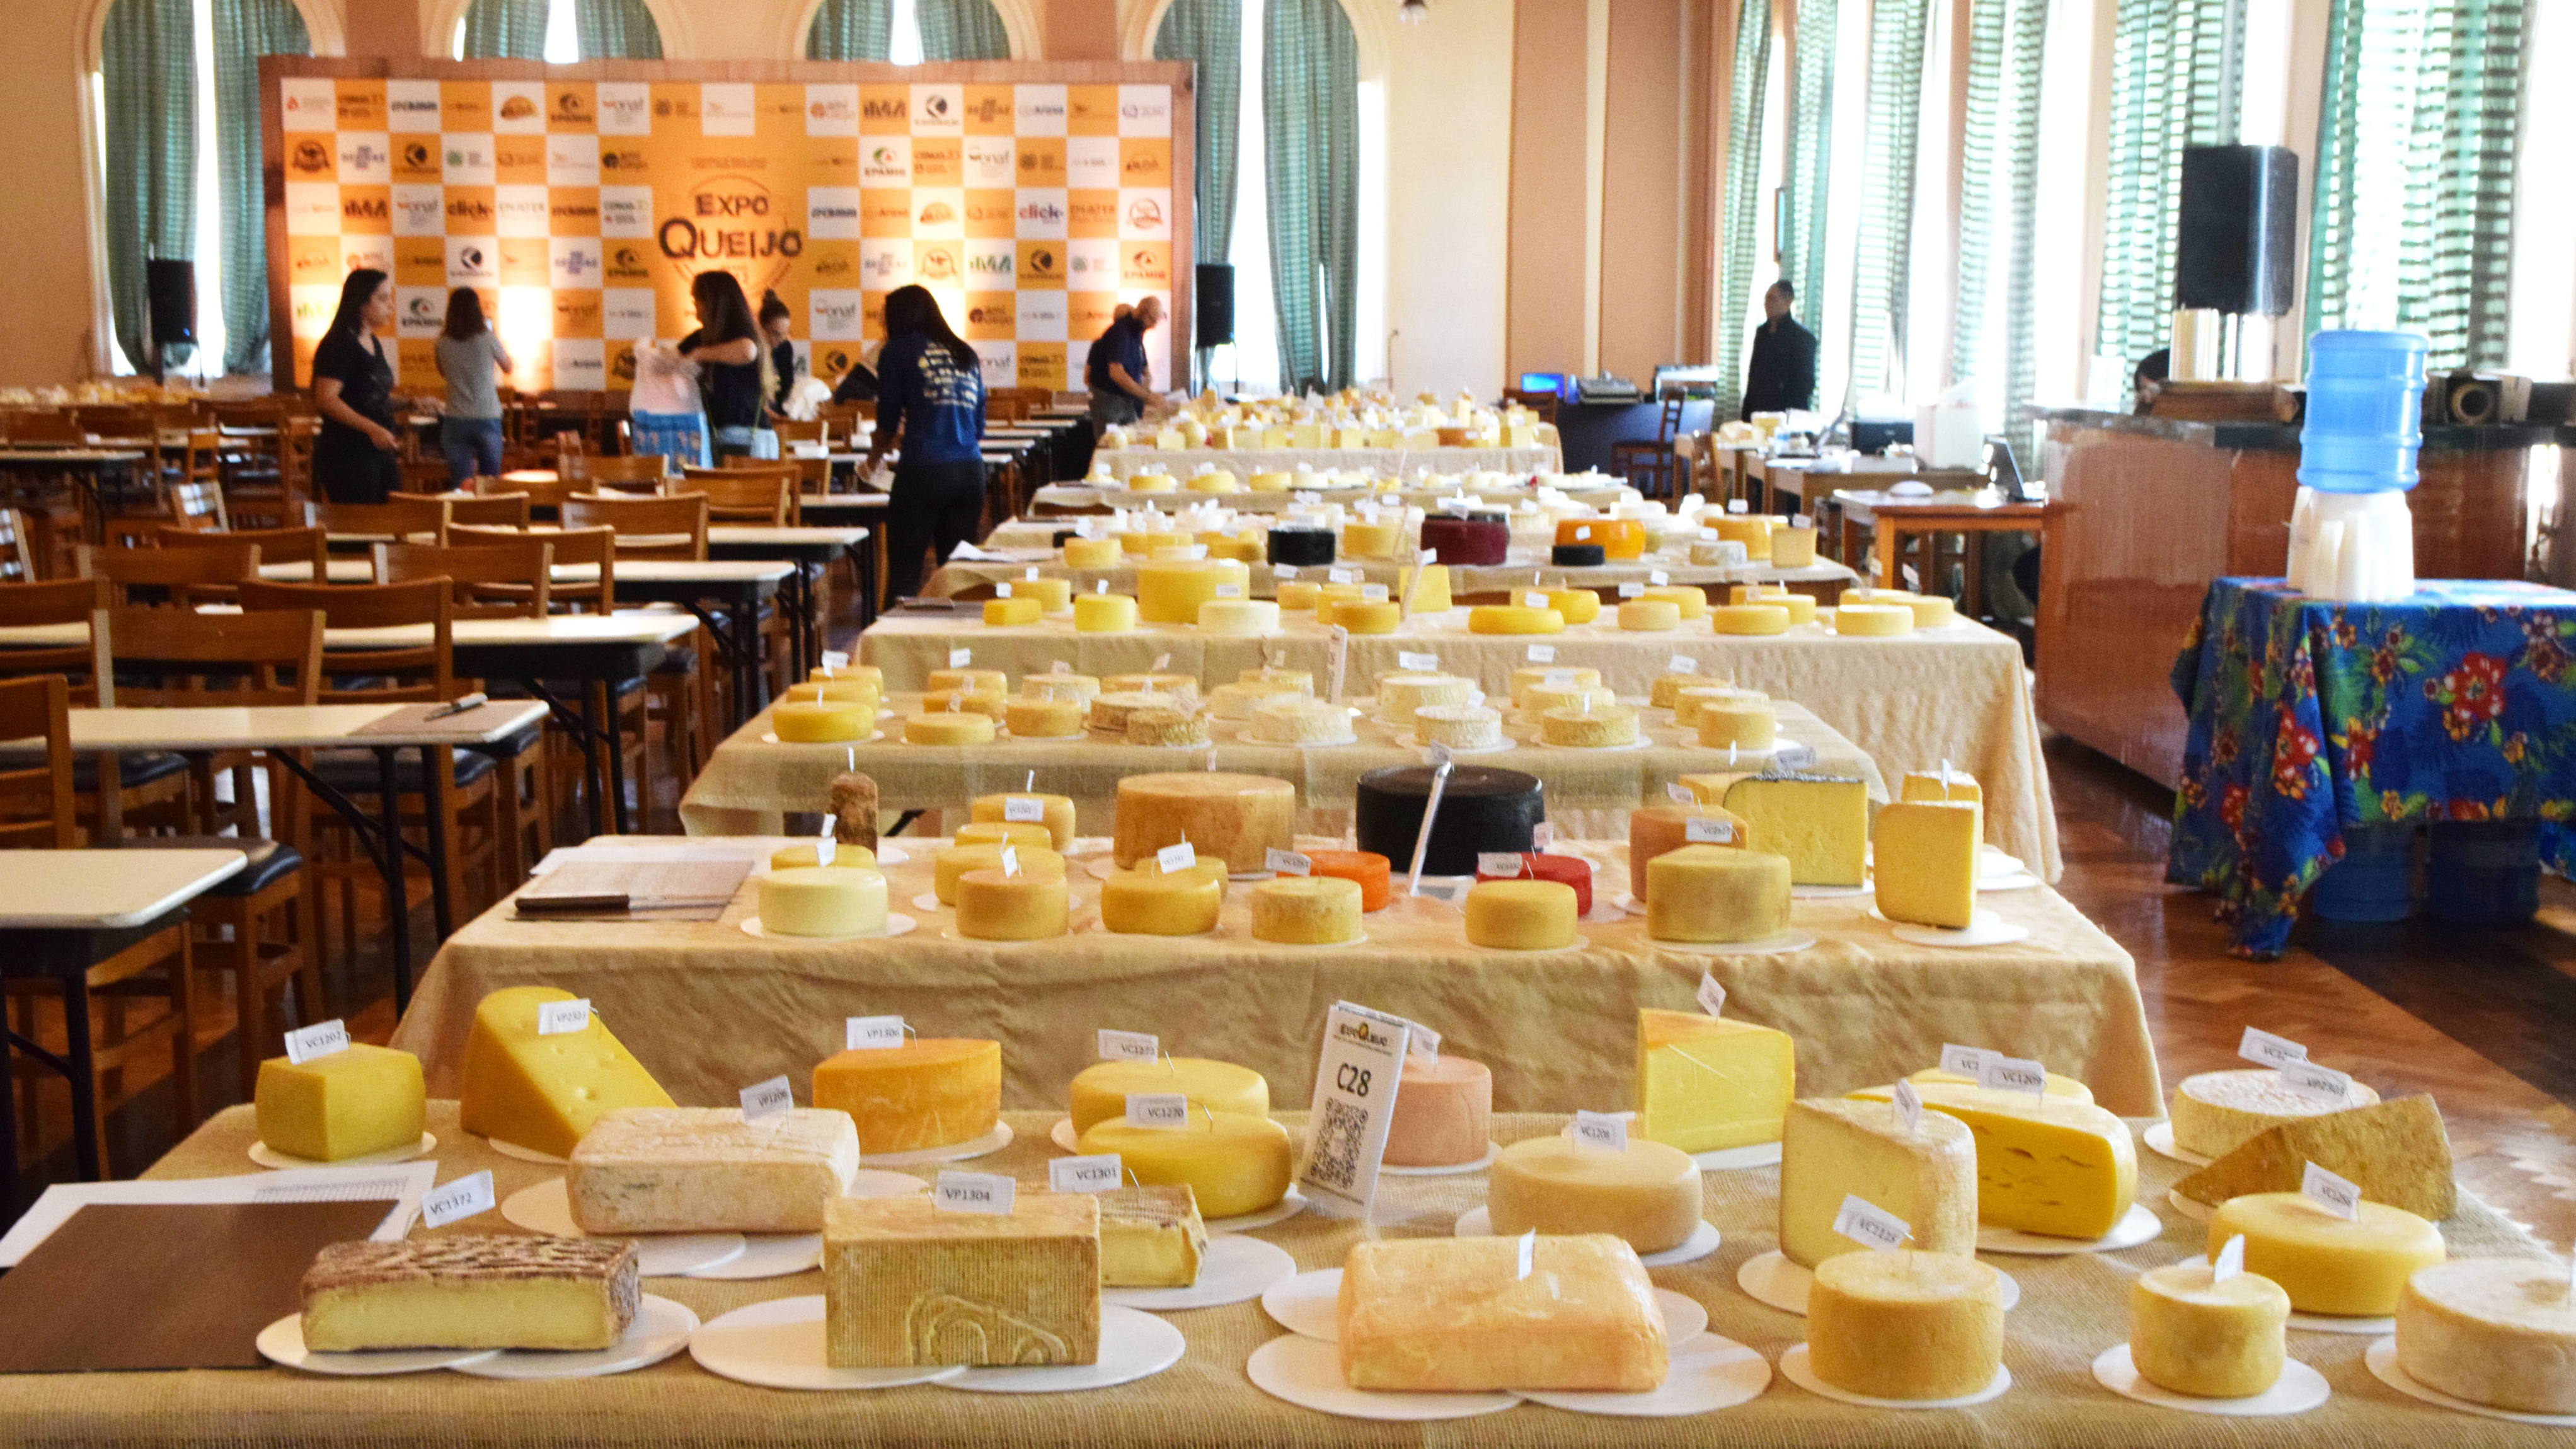 ExpoQueijo Brasil abre inscrições para o maior concurso de queijos das Américas (Foto: Divulgação)